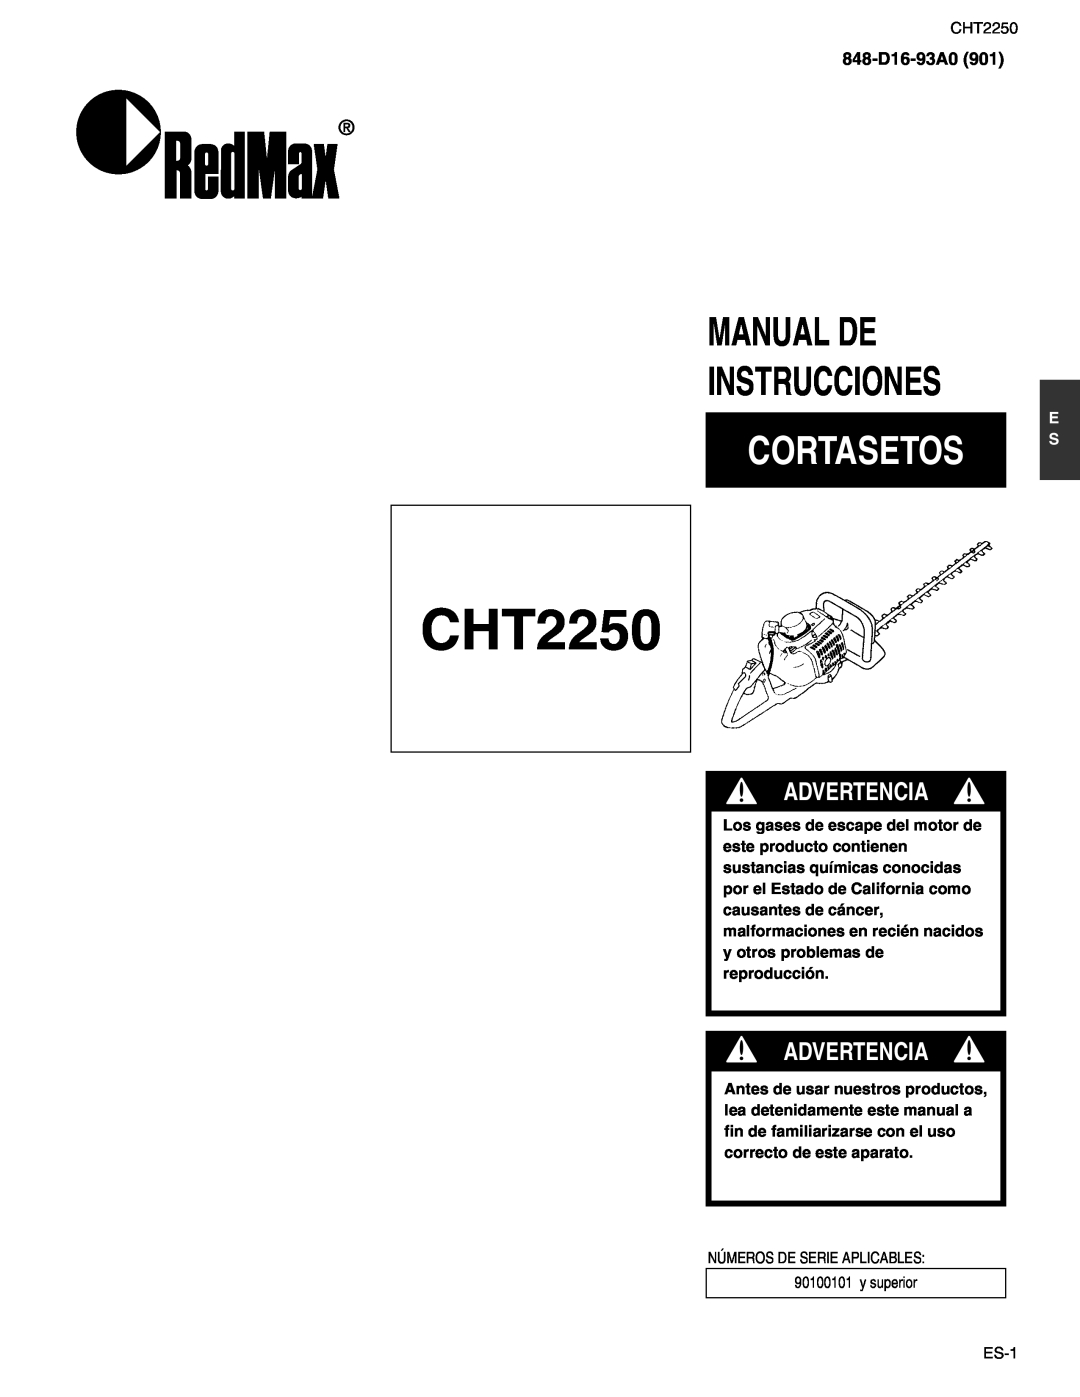 RedMax CHT2250 manual Manual De Instrucciones, Cortasetos, Advertencia, 848-D16-93A0 